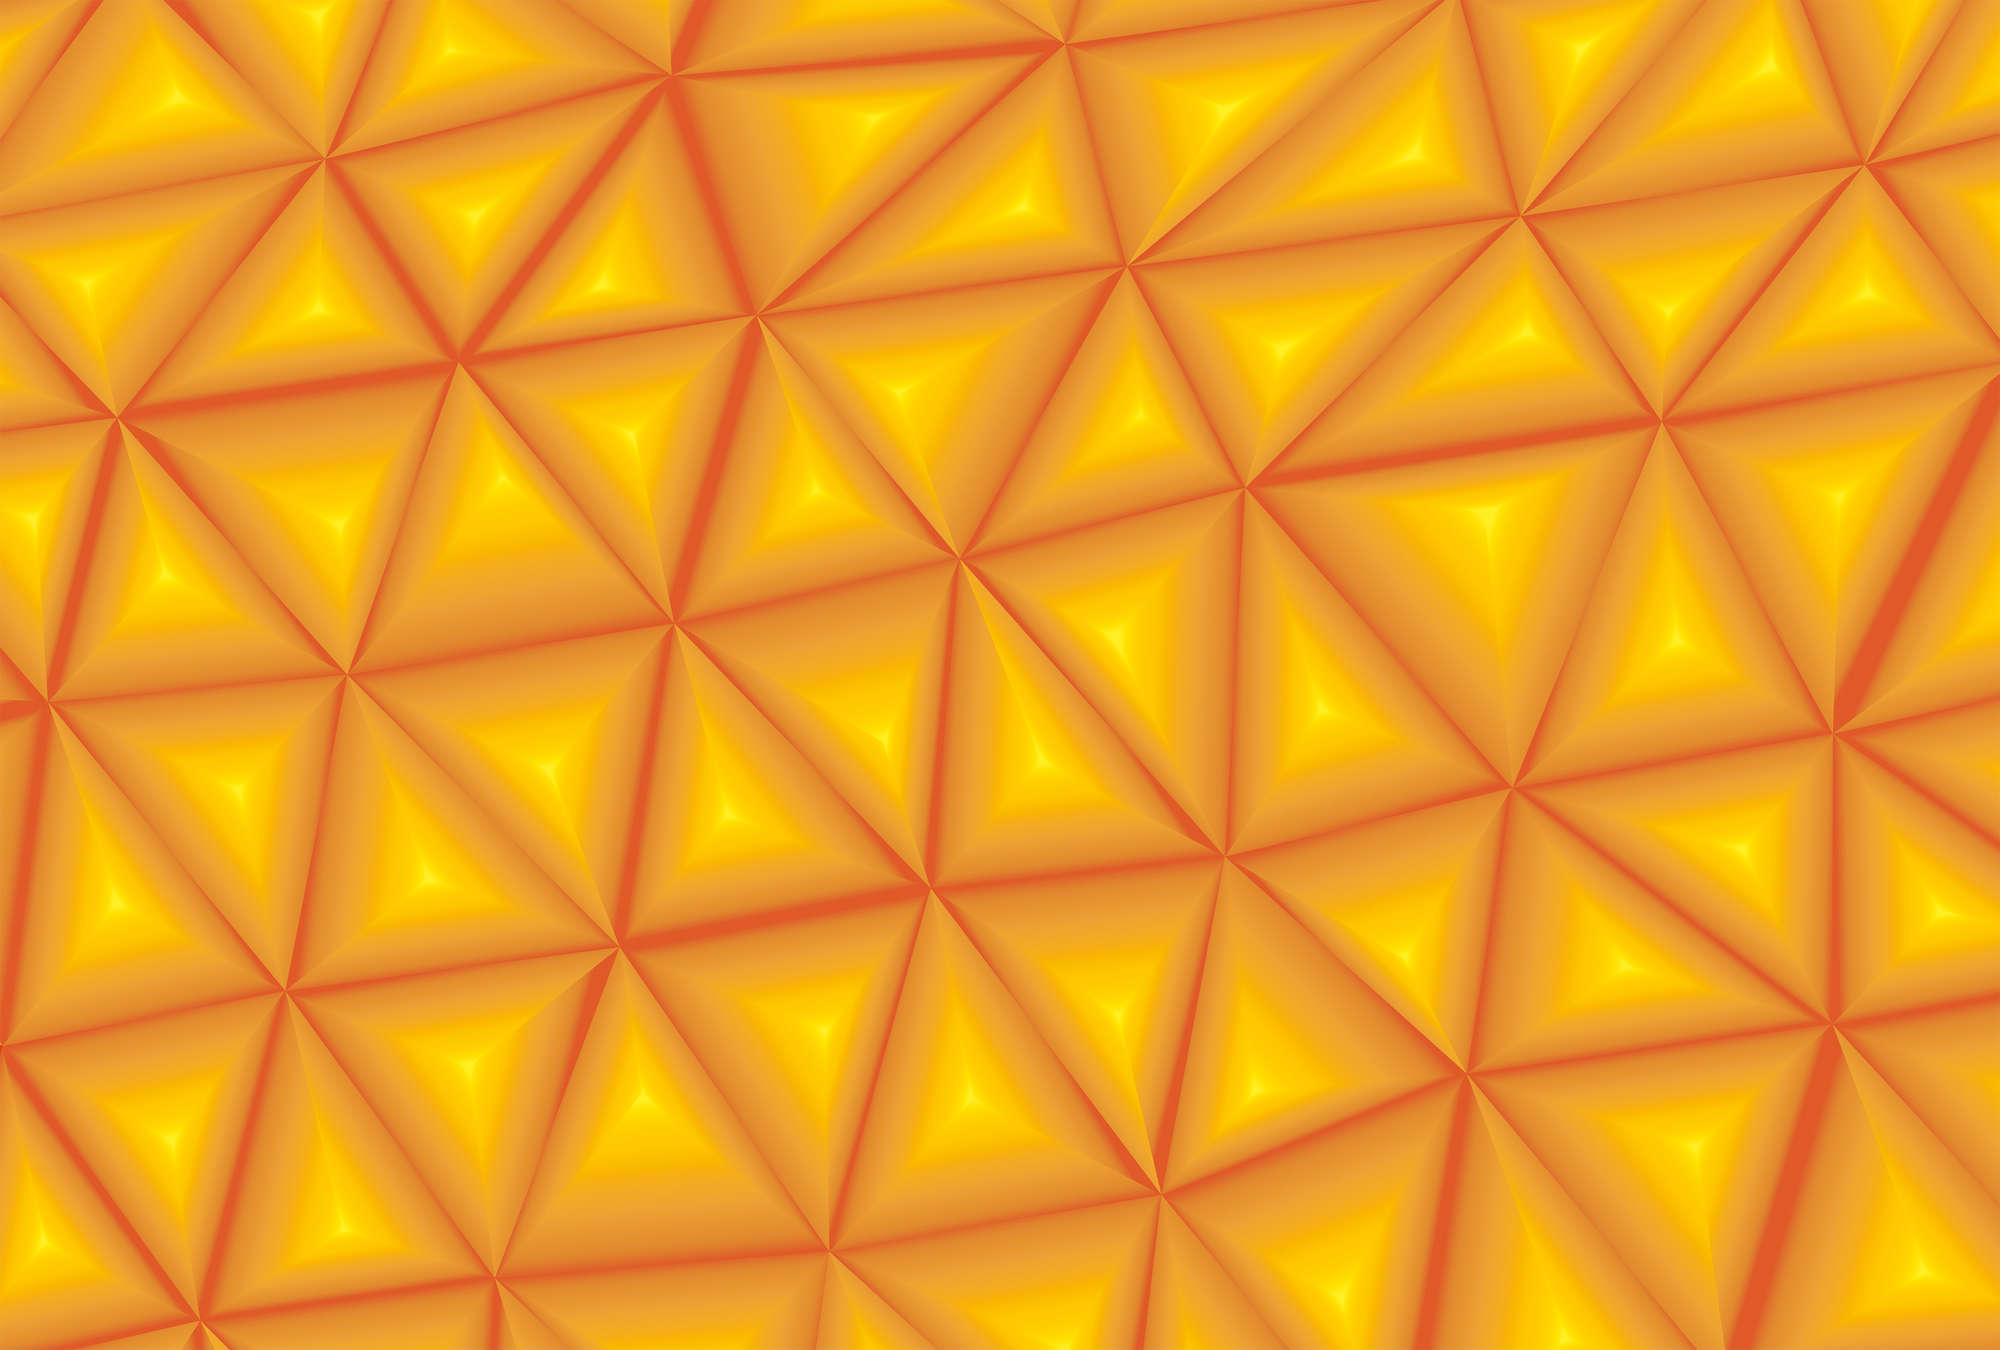             3D Phototope Arancione con sfaccettature a triangolo
        